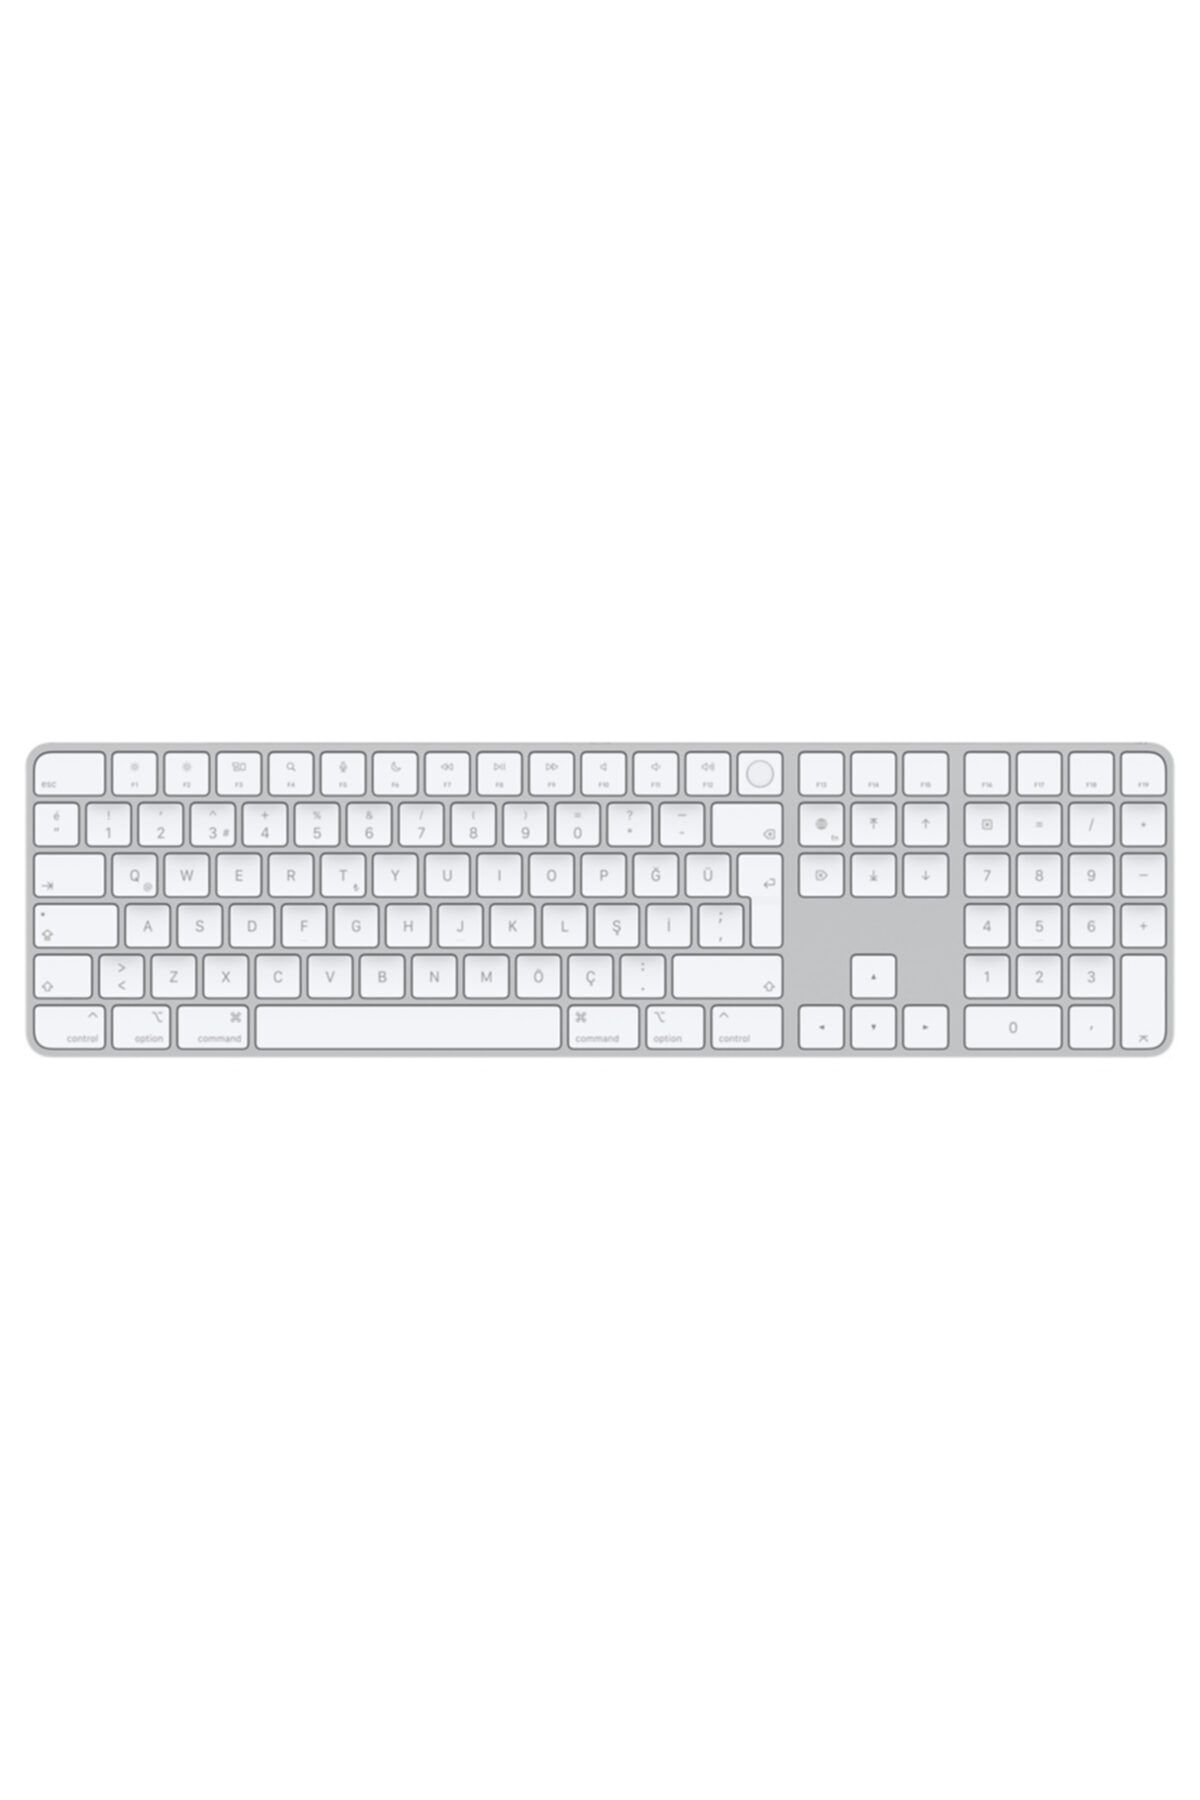 Apple Magic Keyboard Touch Id Özellikli ve Sayısal Tuş Takımlı Türkçe Q Klavye Beyaz Tuşlar